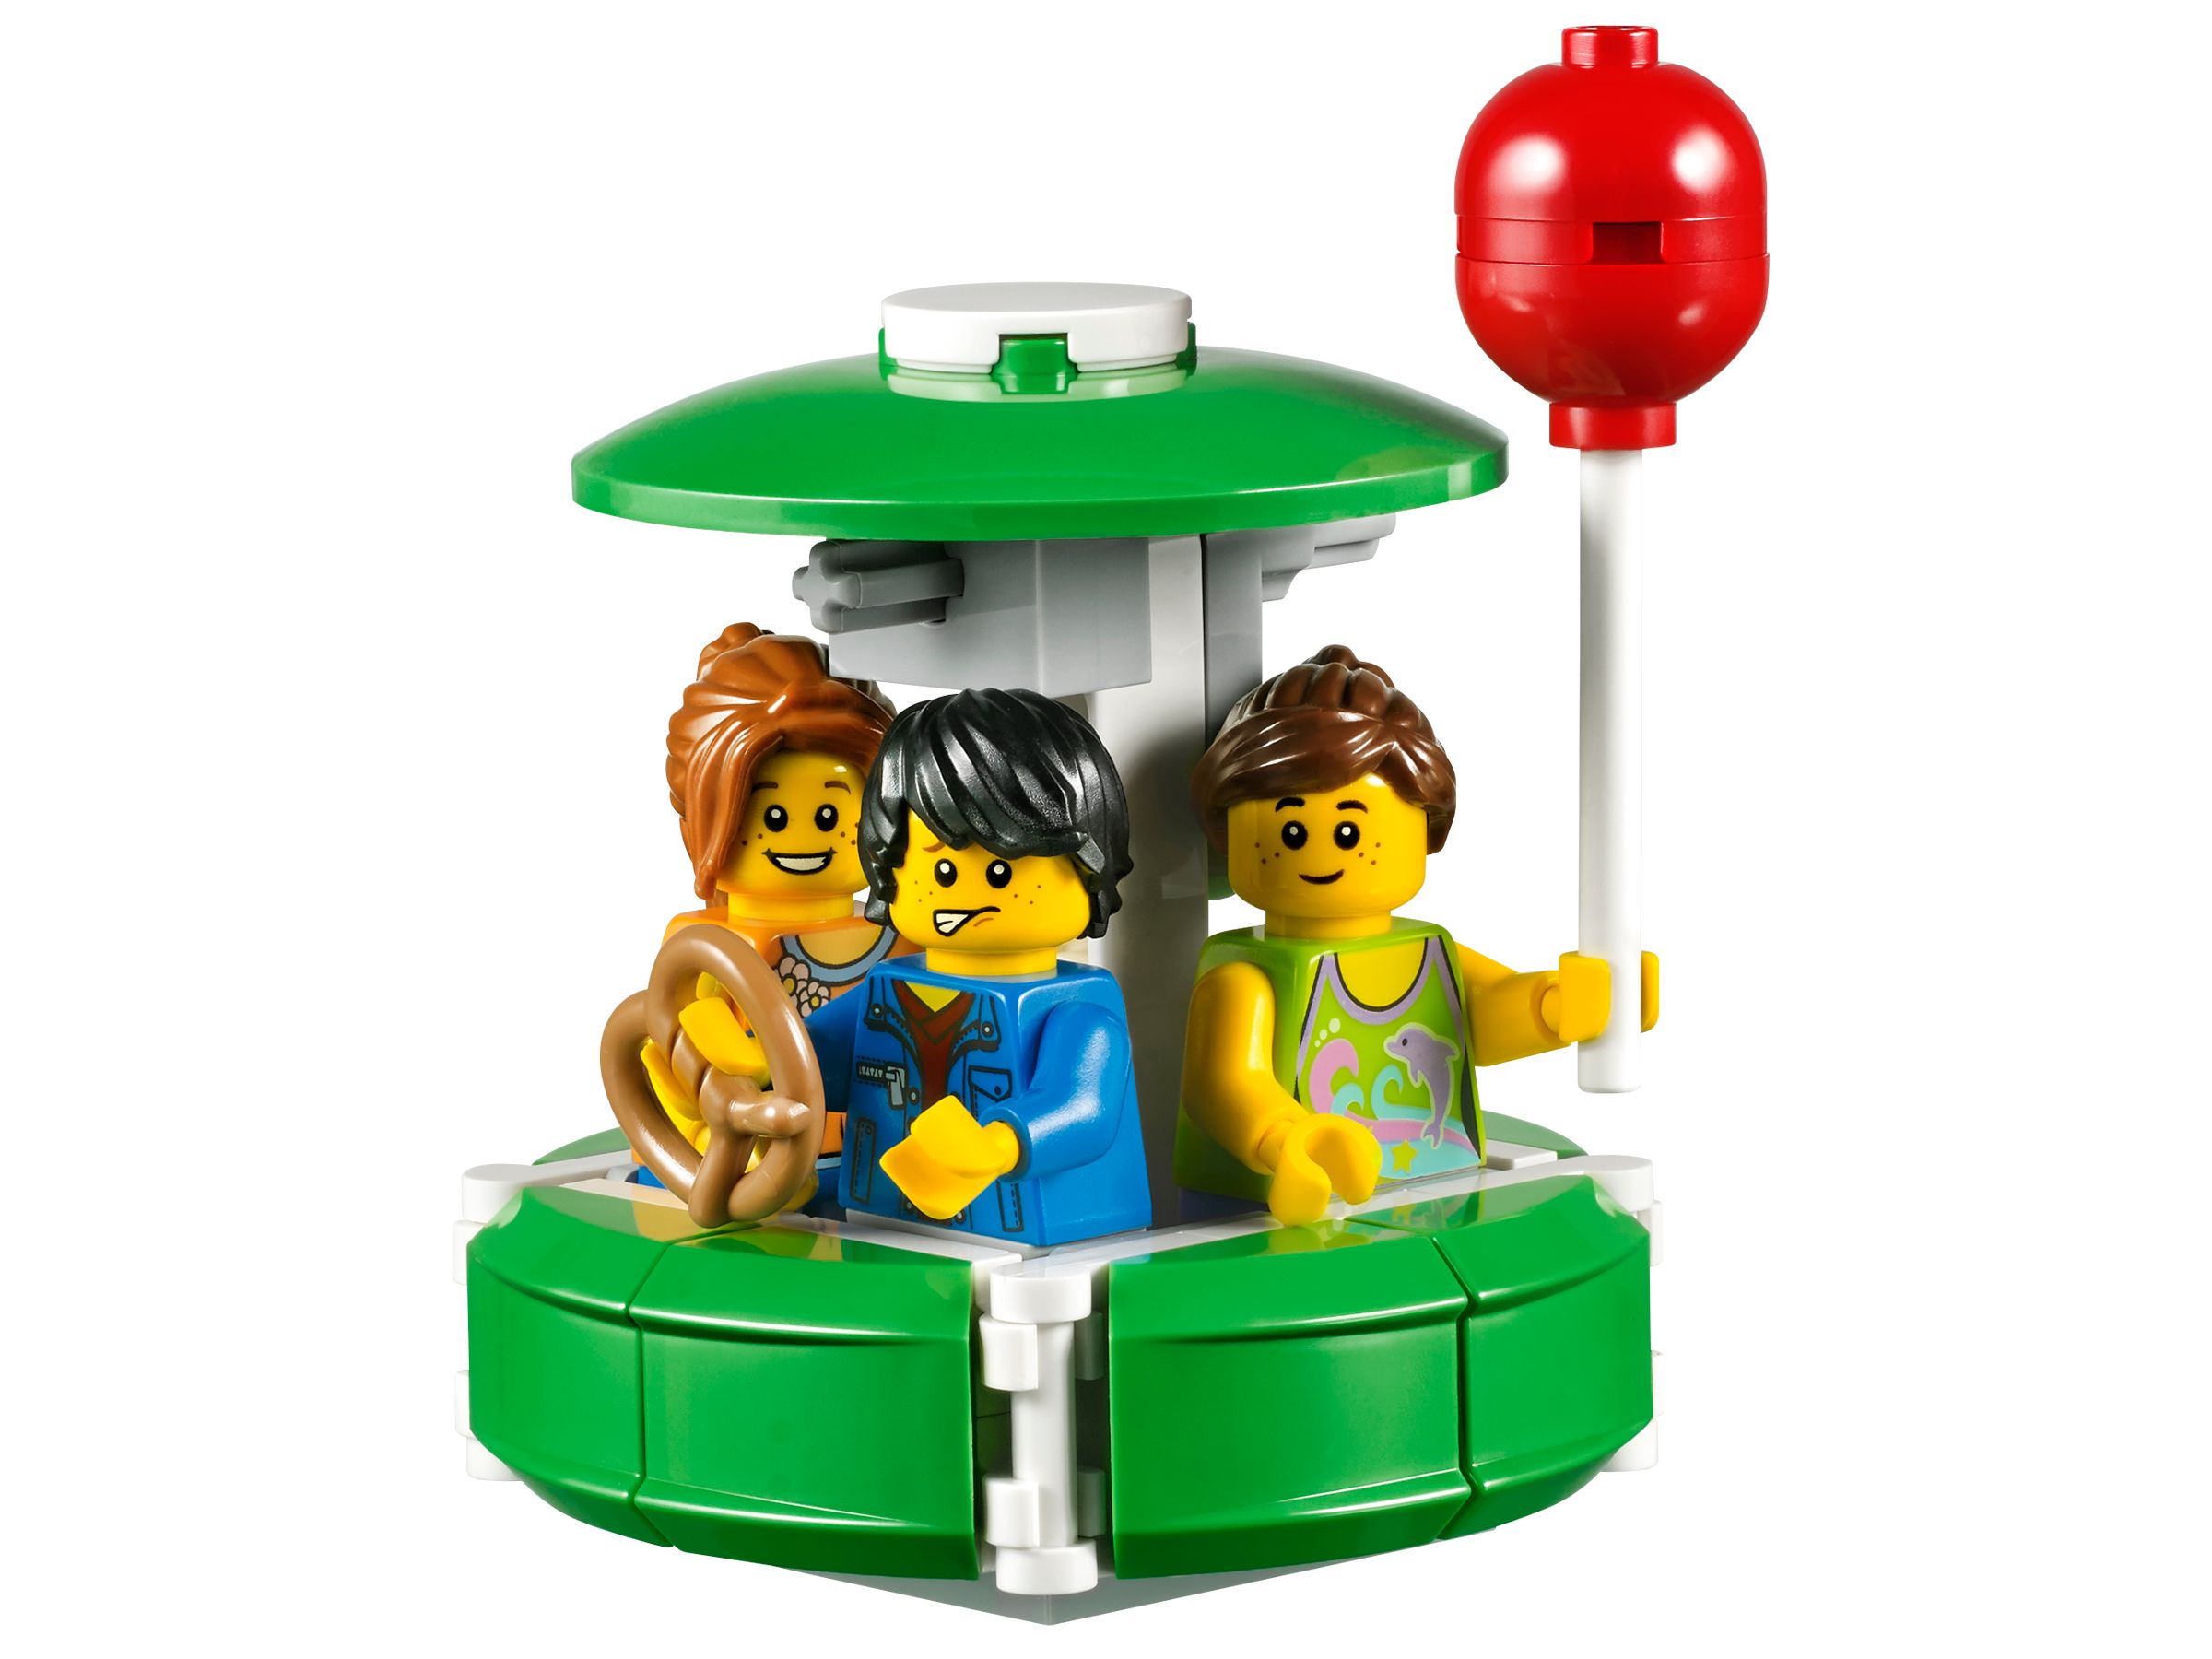 LEGO Advanced Models 10247 Riesenrad (Ferris Wheel) LEGO_10247_alt5.jpg